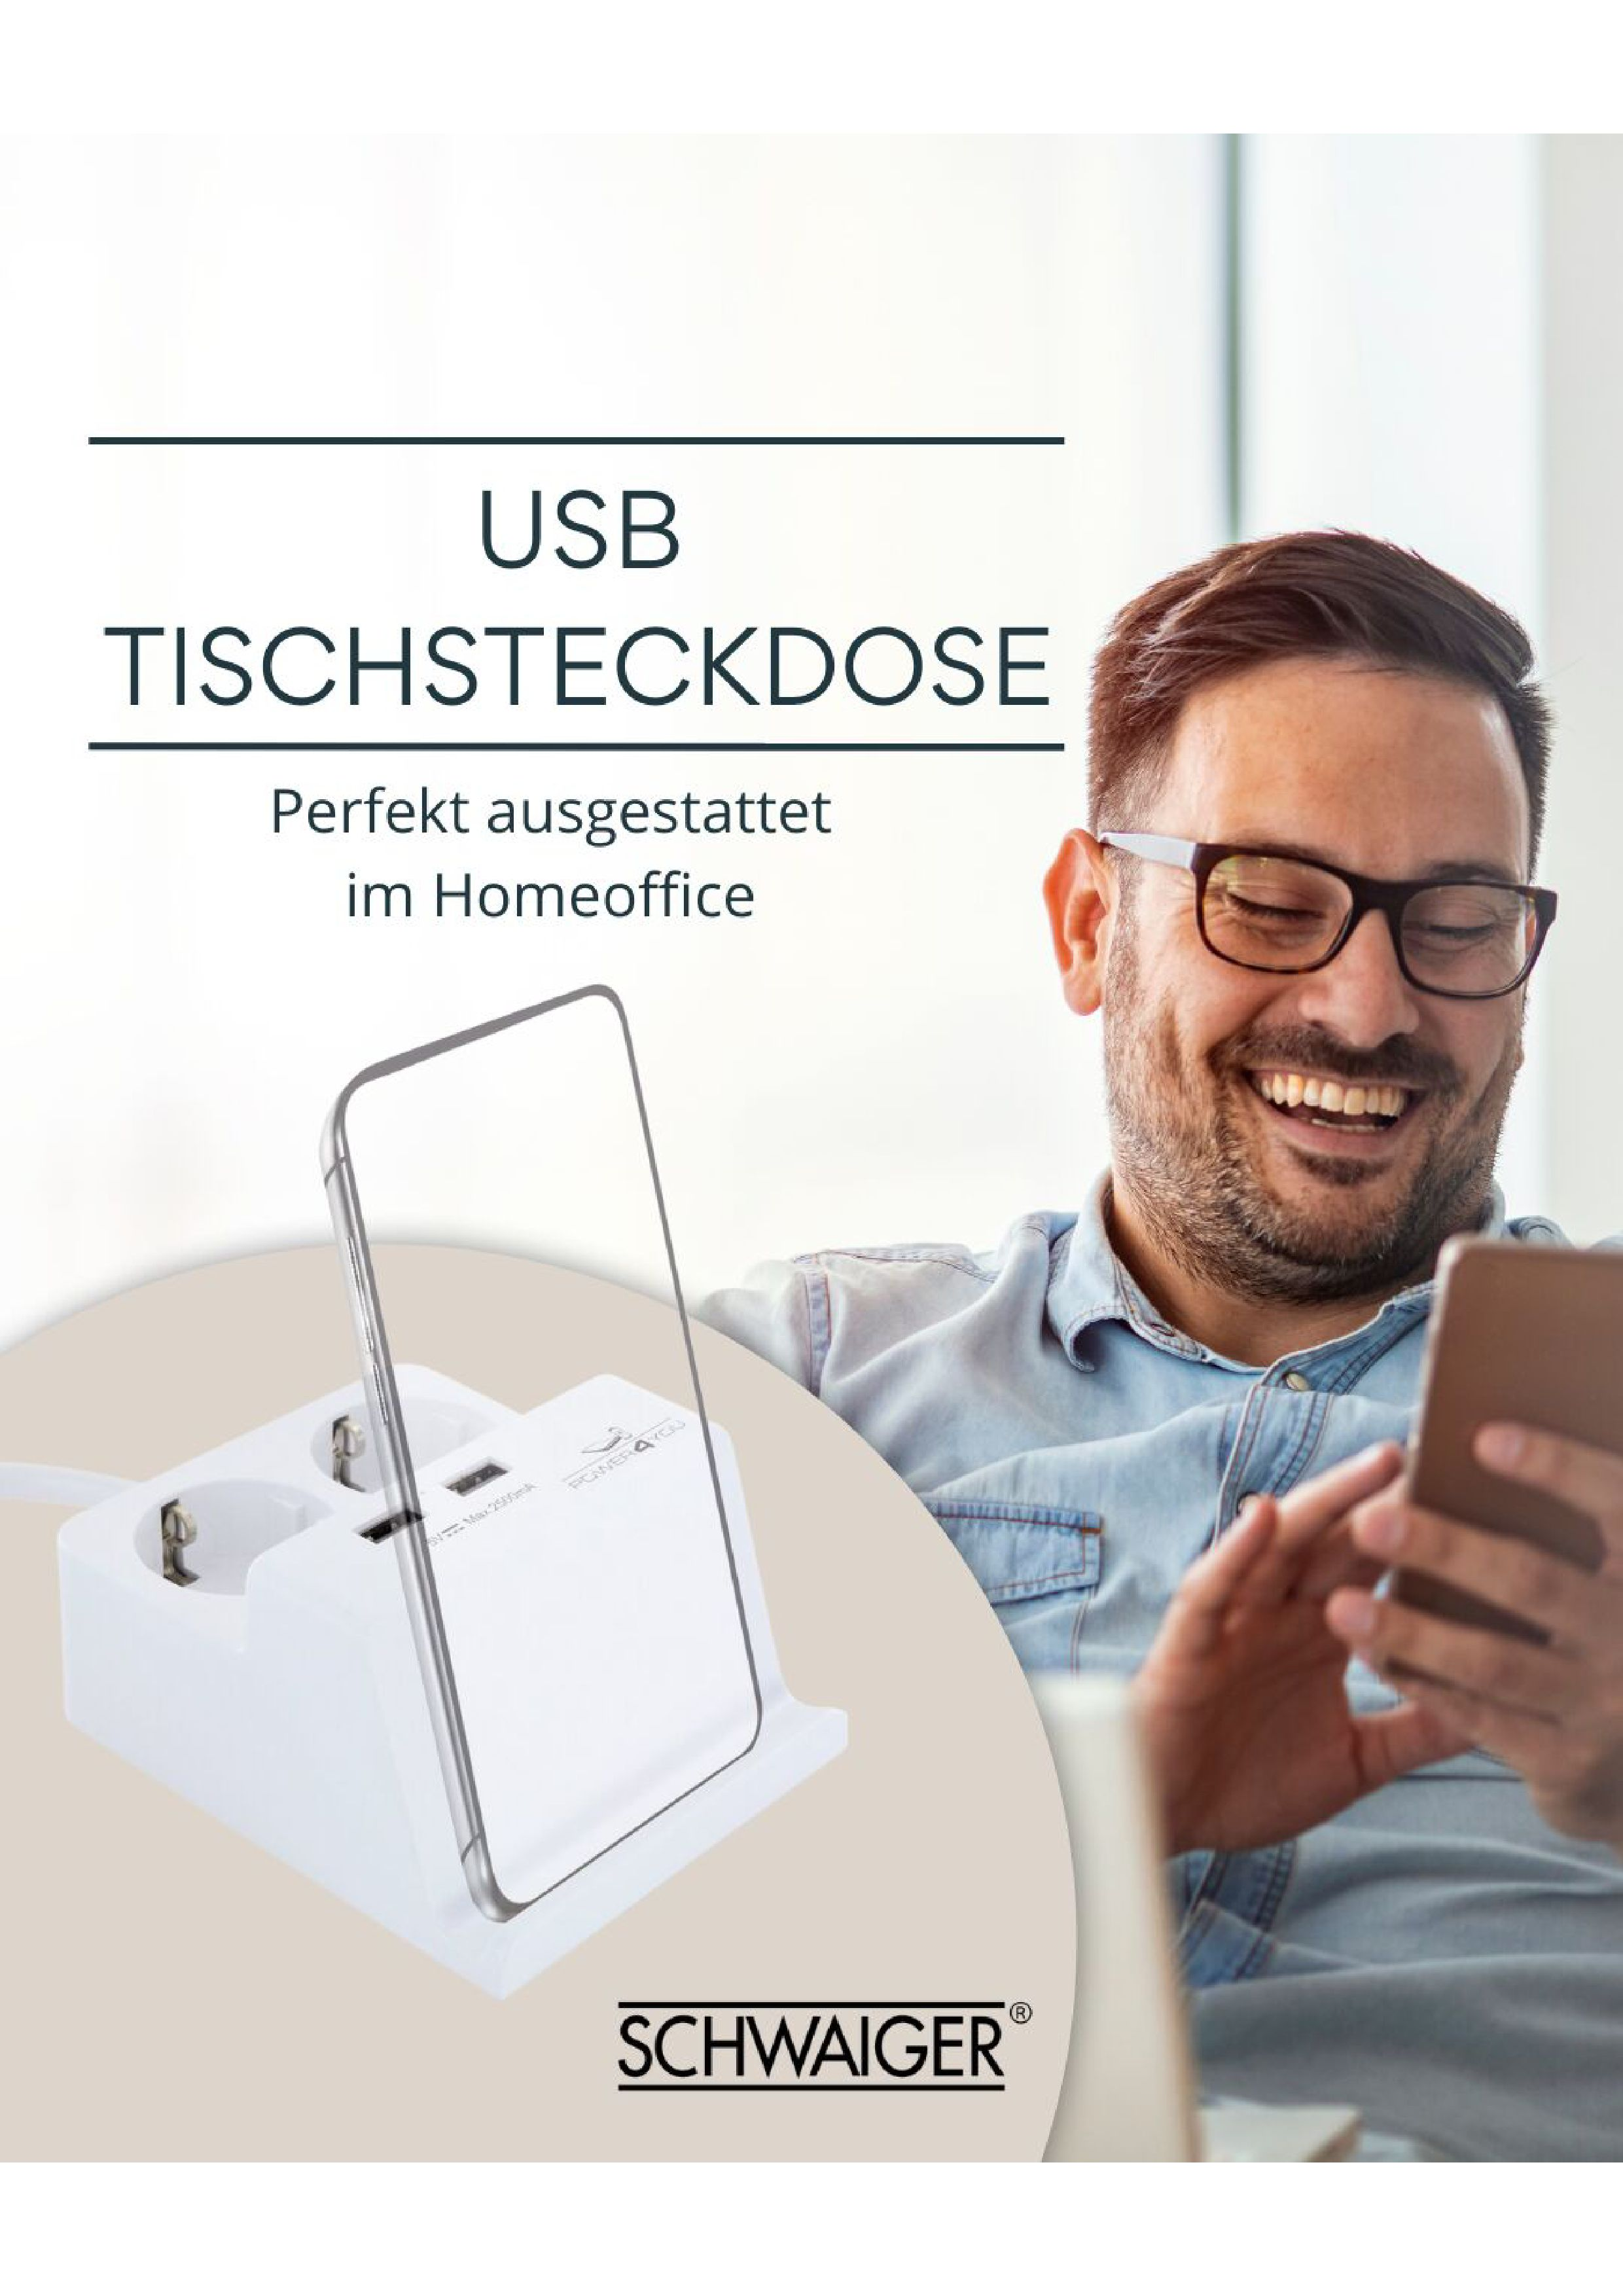 SCHWAIGER -661545- Tischsteckdose USB